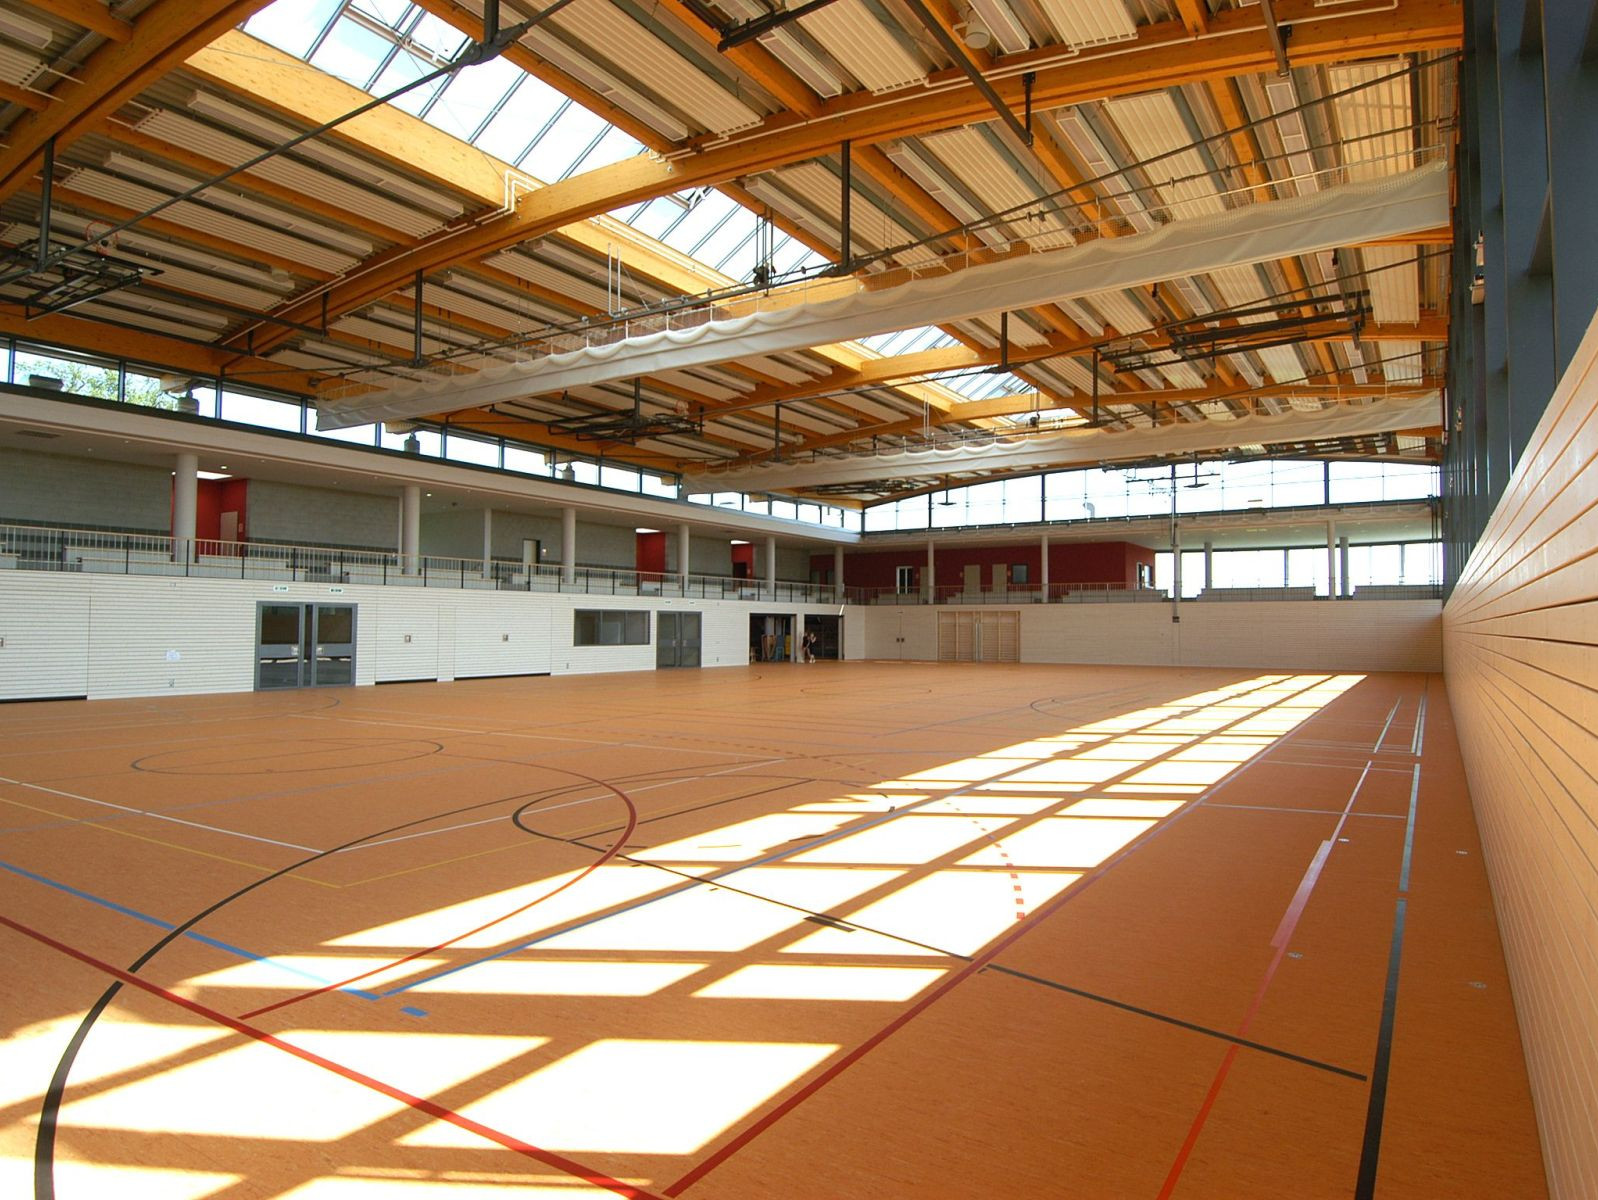 drei-feld-sporthalle-kirchberg-an-der-murr